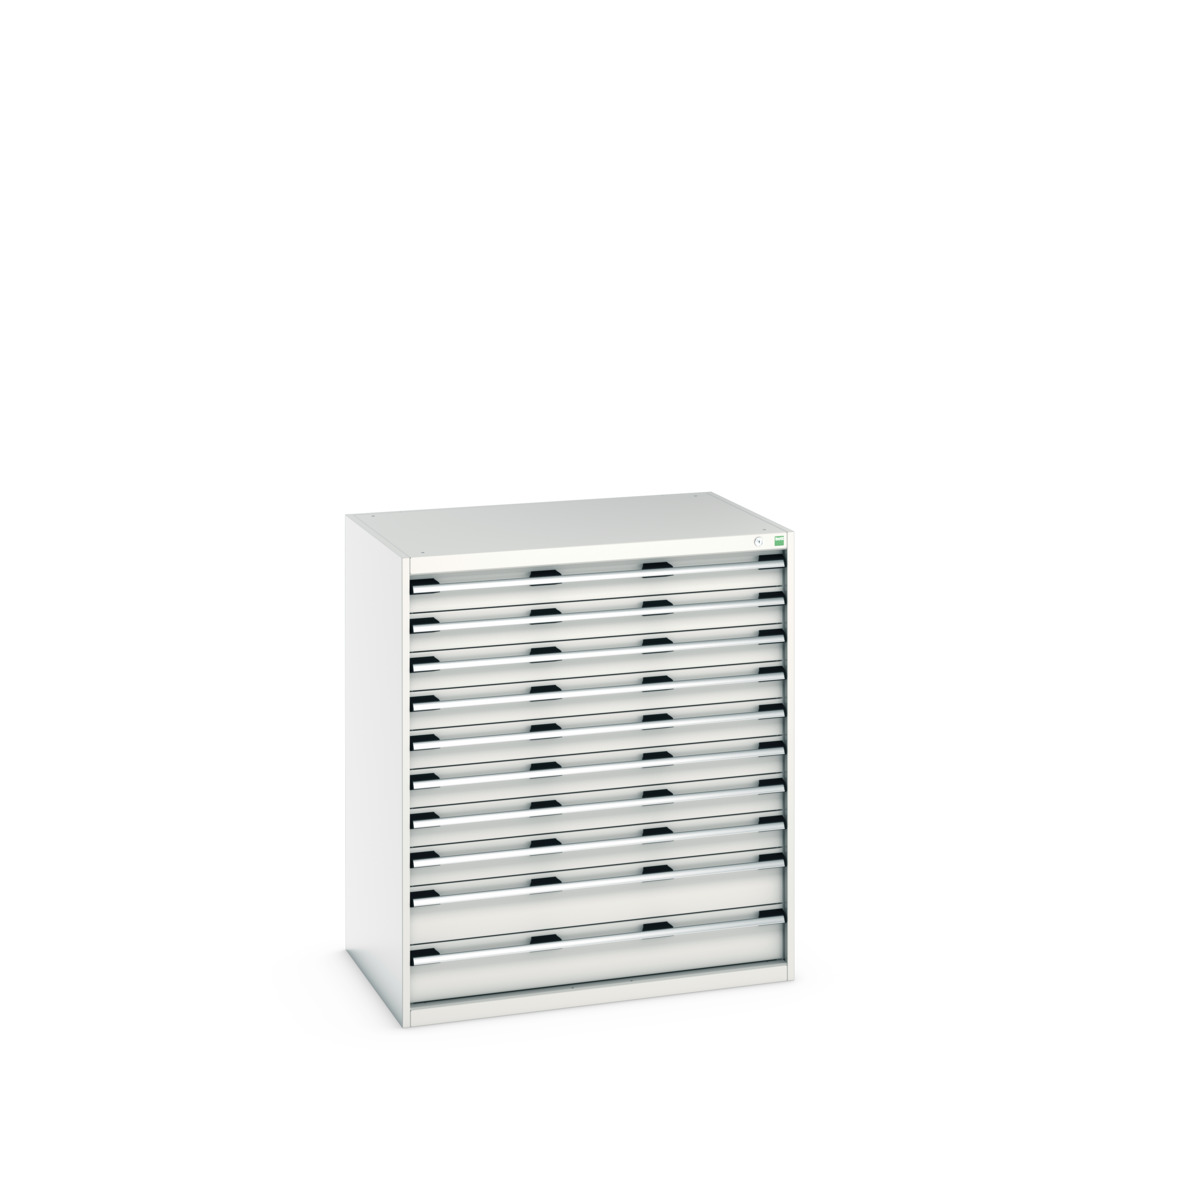 40029033.16V - cubio drawer cabinet